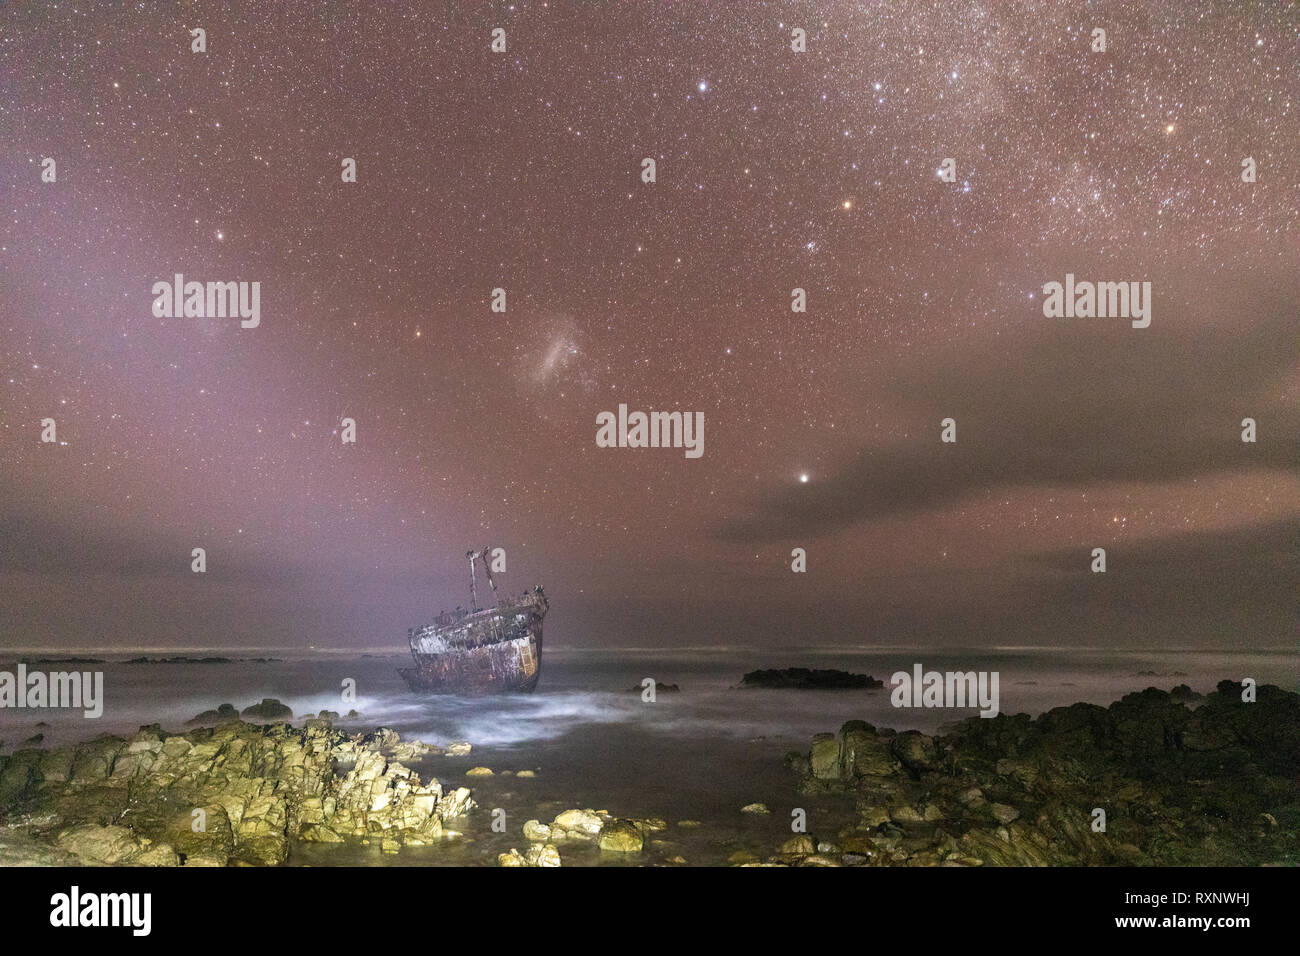 Meisho Maru naufragio en la noche bajo el cielo de estrellas a lo largo de la costa de las agujas en el extremo más meridional de África y Sudáfrica Foto de stock